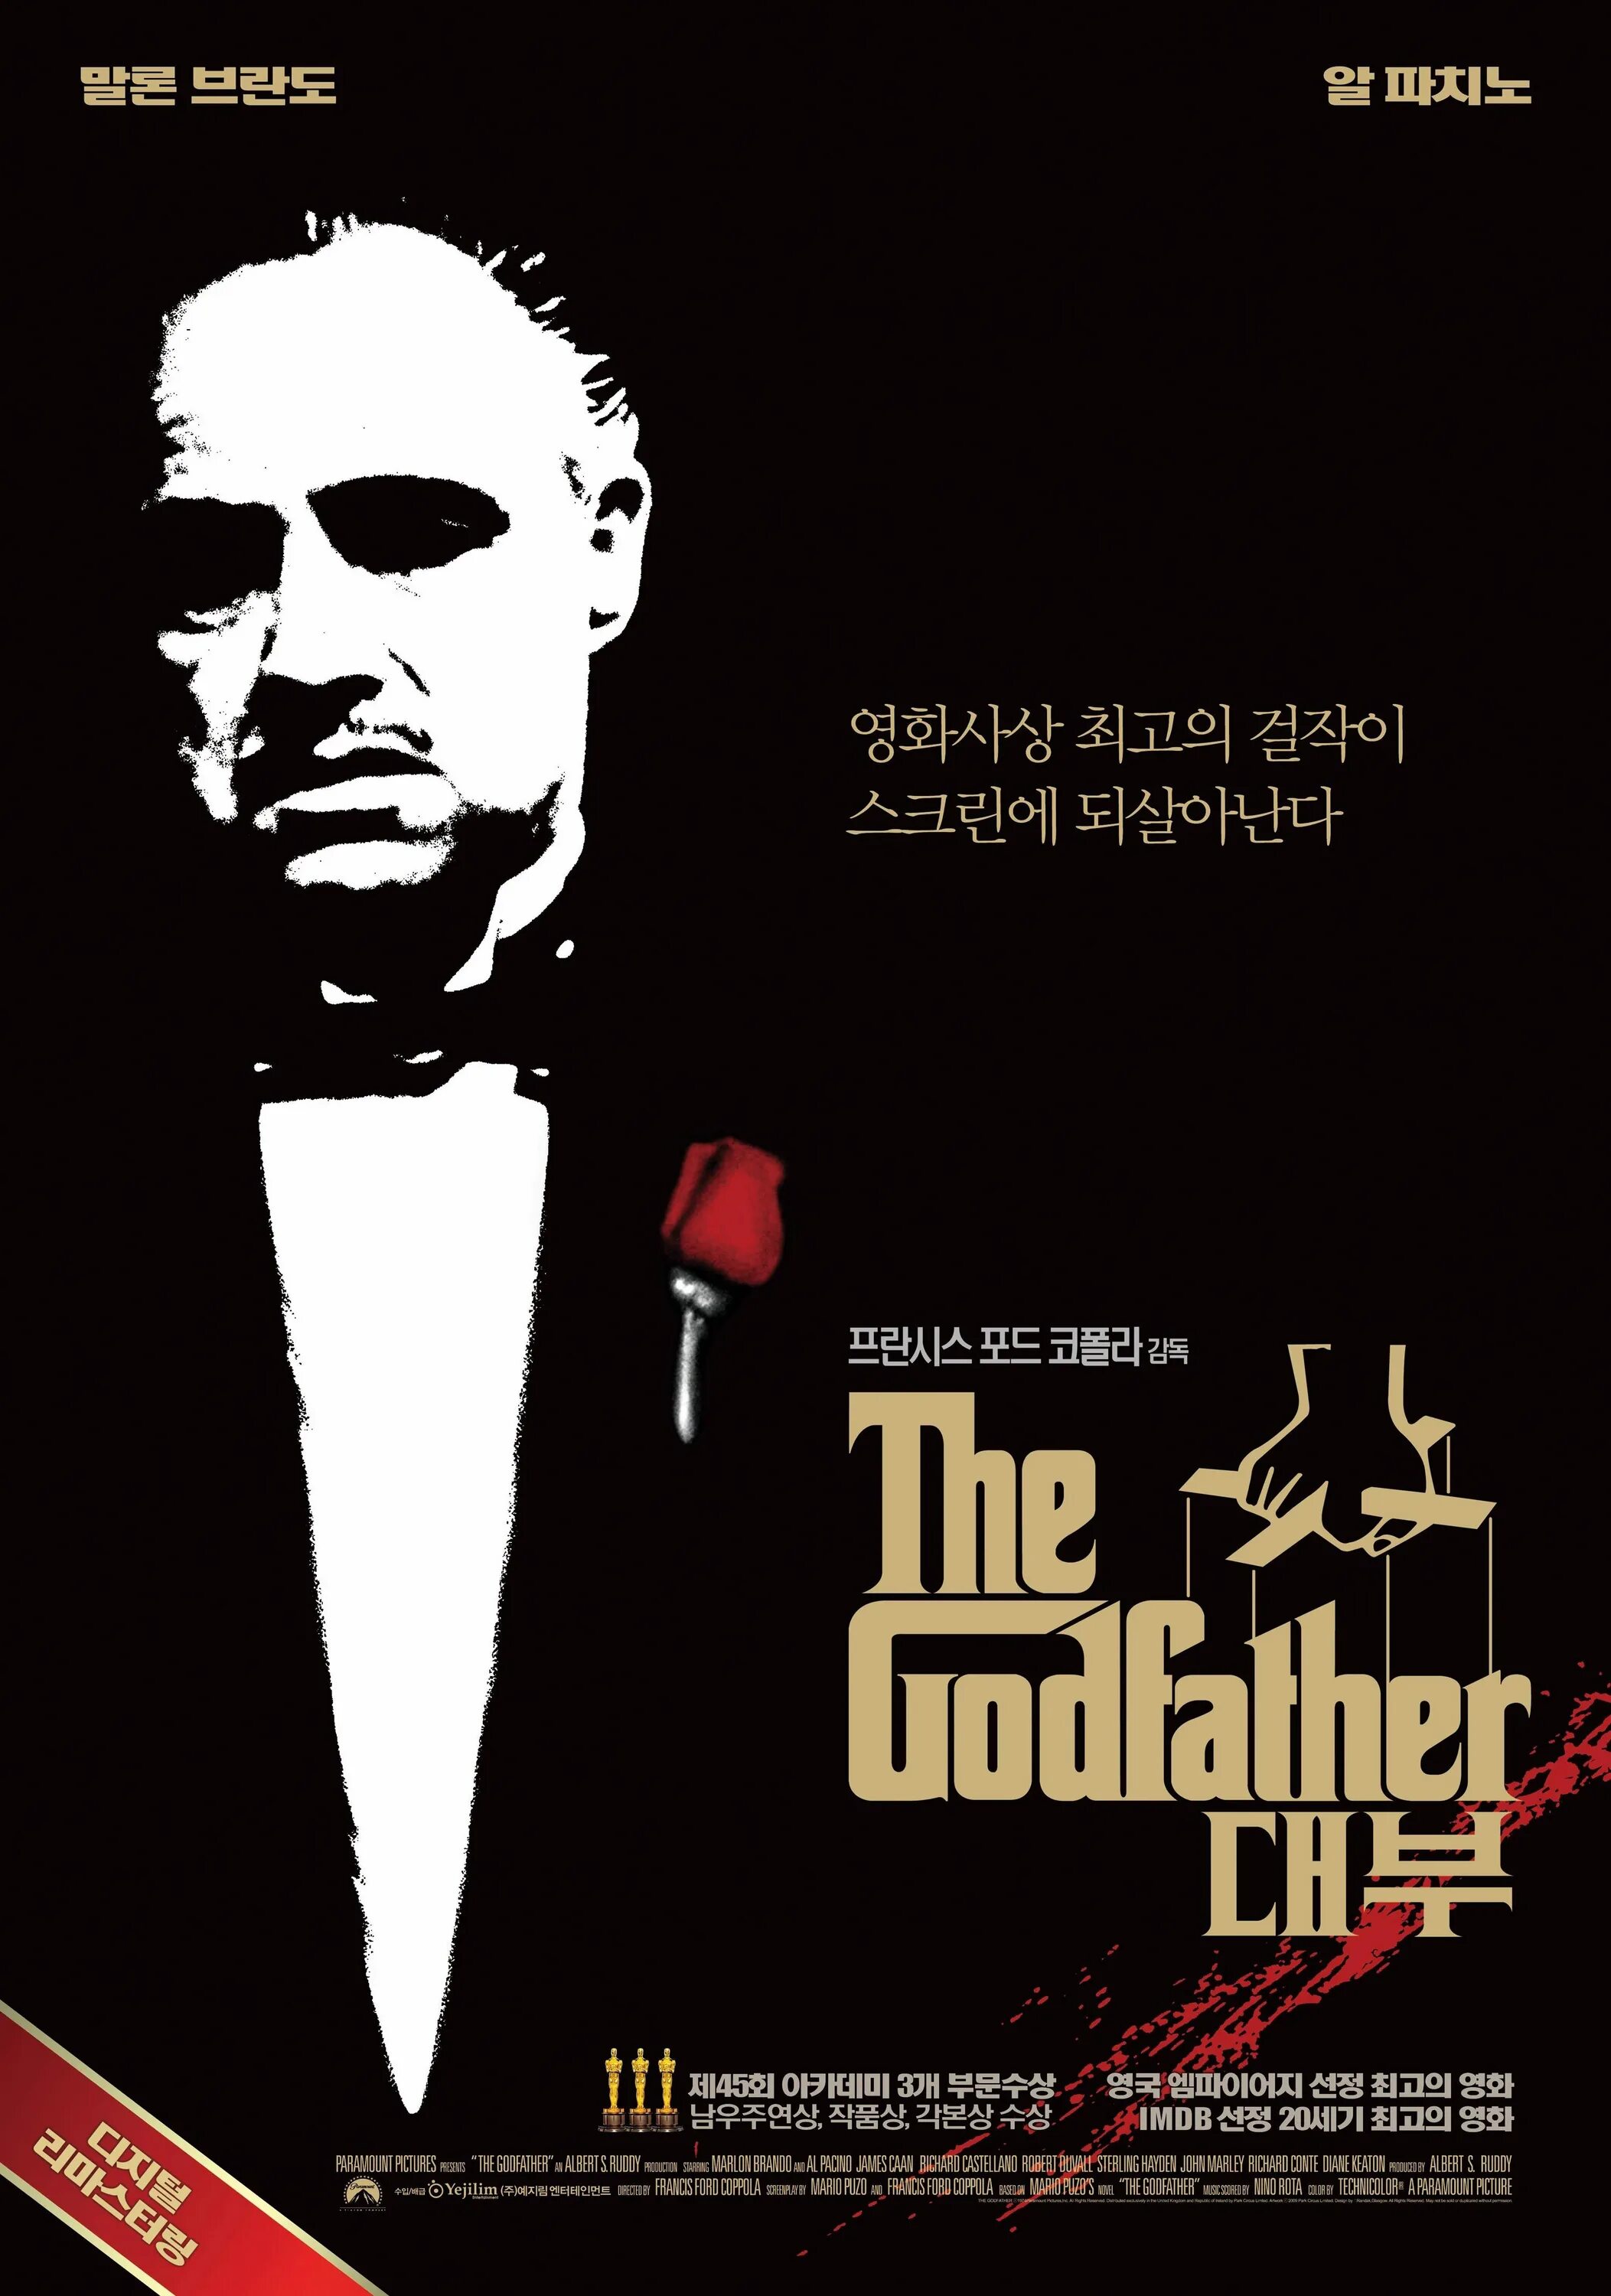 Крестный отец 1972. The Godfather 1972 poster. Коза Ностра мафия. Мафиози коза Ностра.